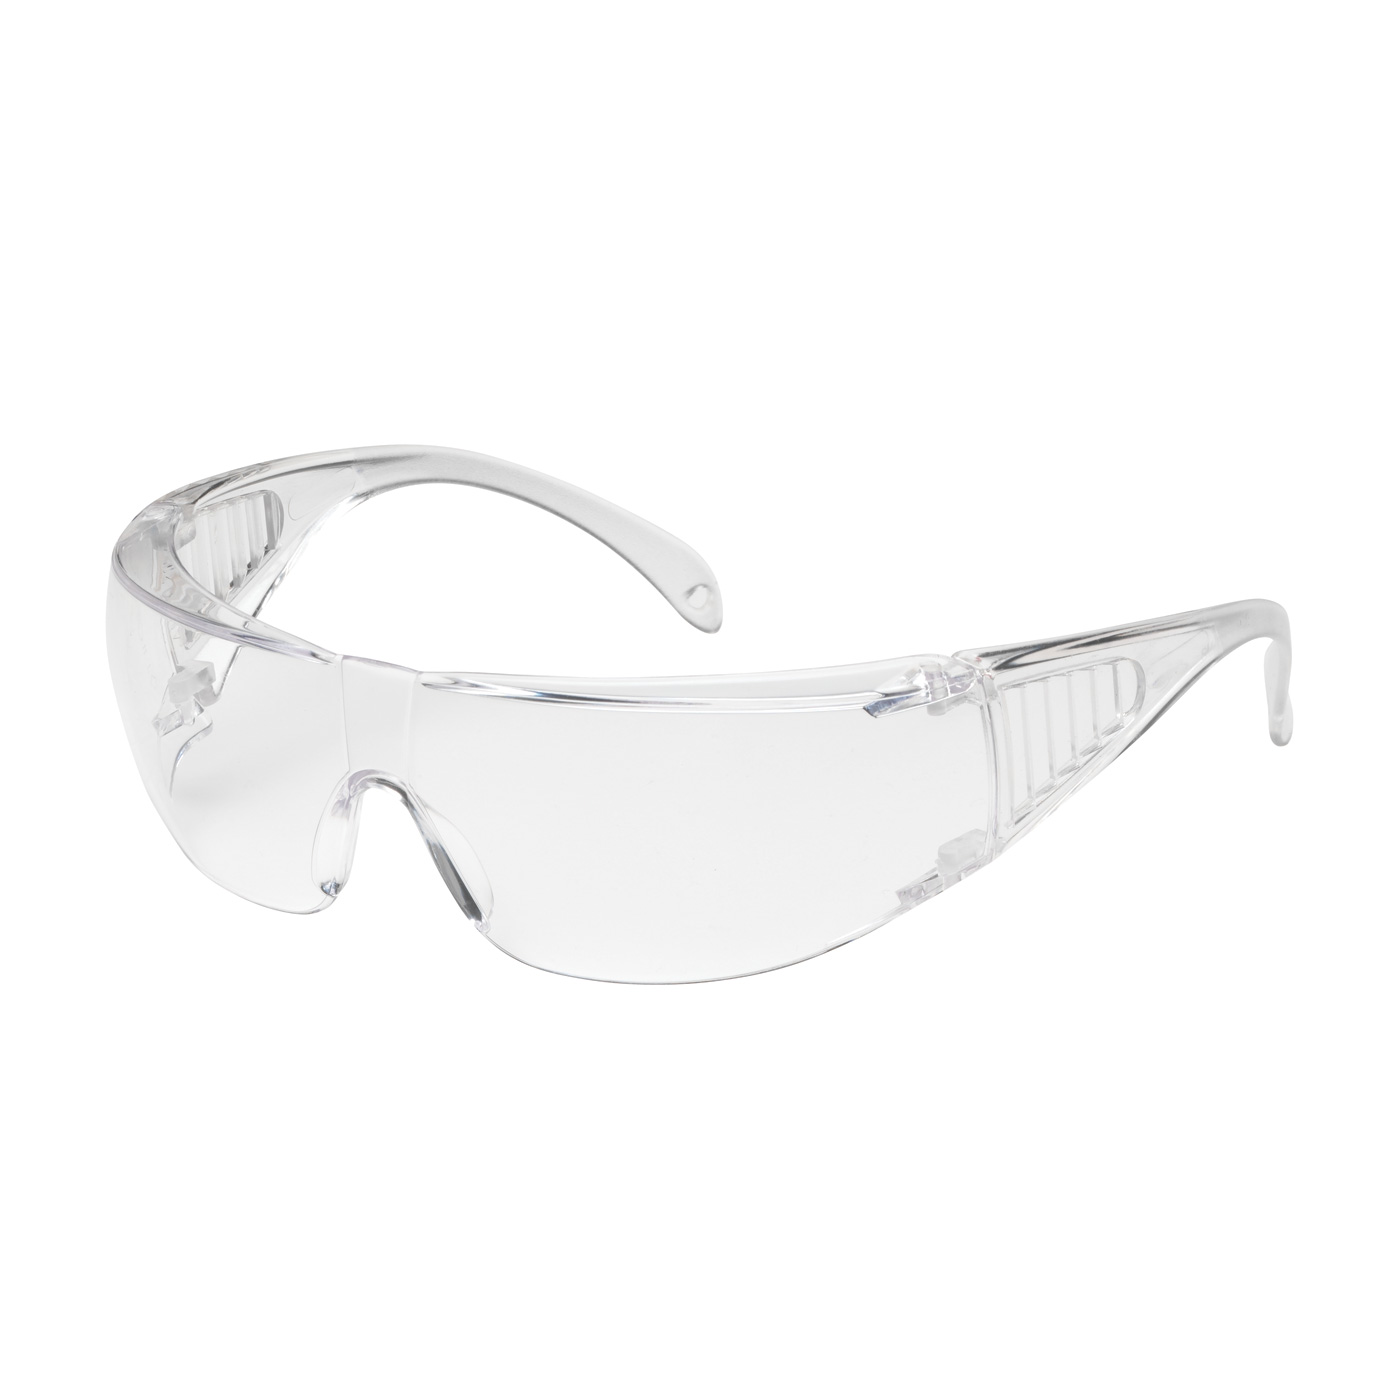 Ranger™ Rimless OTG Safety Glasses | Over-The-Glasses Visitor Specs